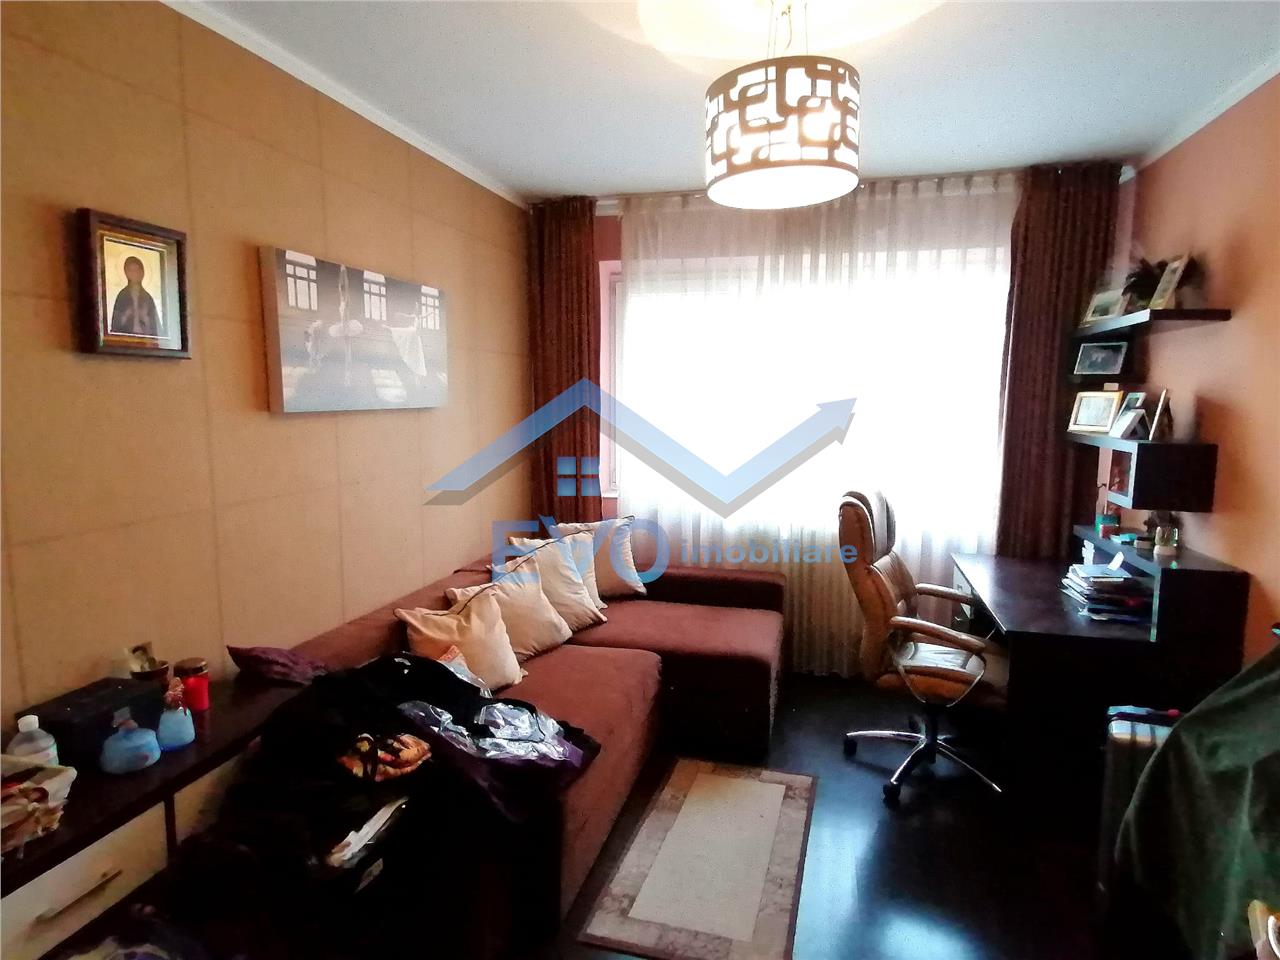 Apartament de vanzare, 3 camere, decomadat, Tatarasi, boxa